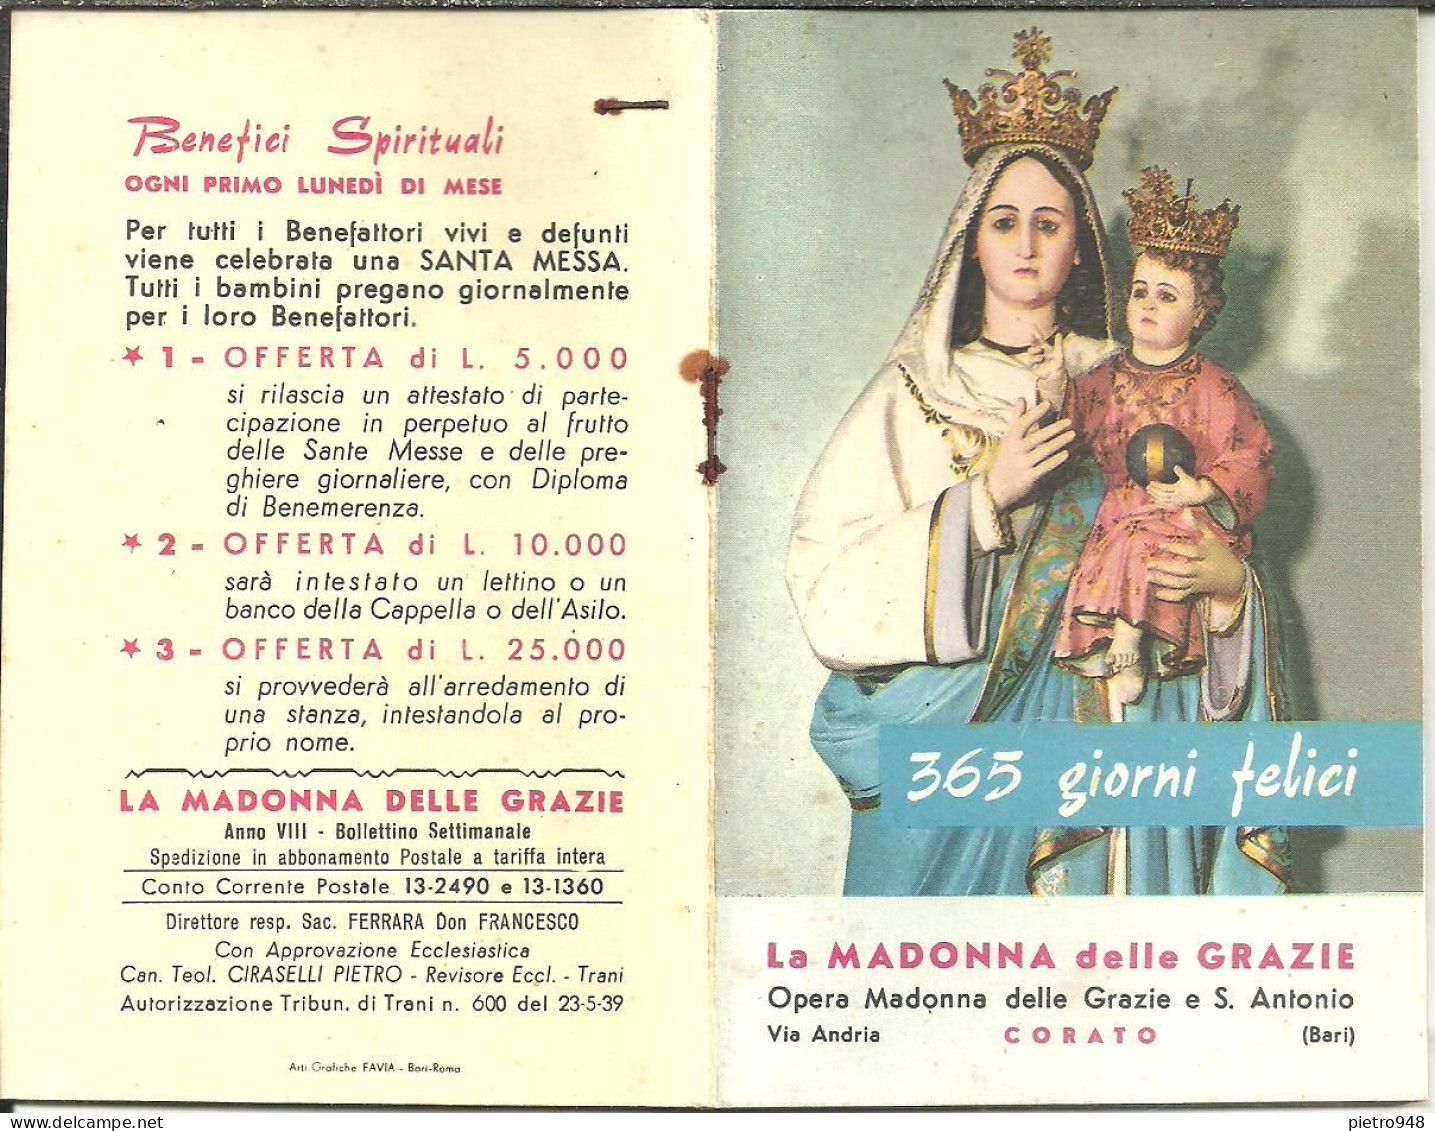 Libro (Libretto) Religioso "Opera Madonna Delle Grazie E Sant'Antonio" Corato (Bari), Agendina 1966 - Religion/ Spiritualisme